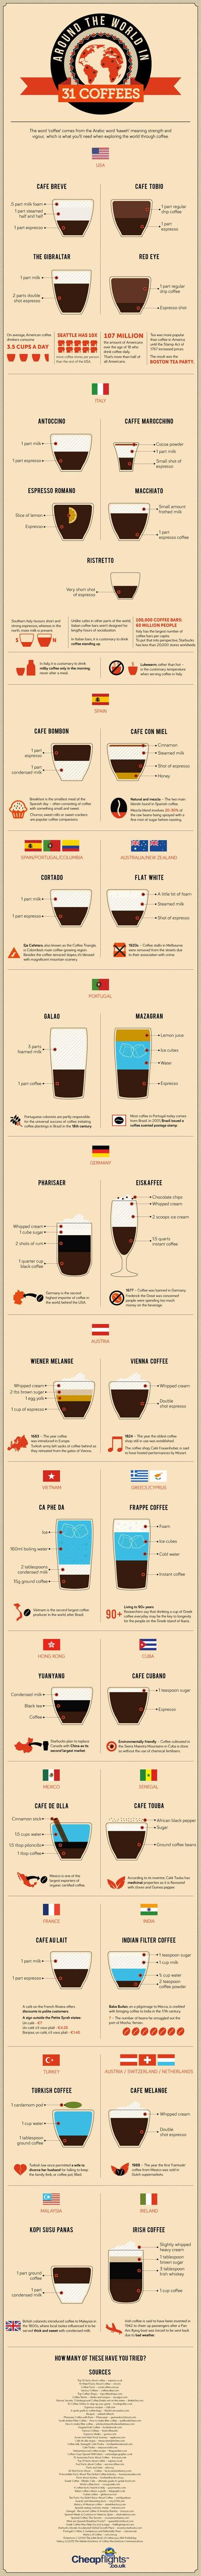 Les 31 manières de boire le café à travers le monde